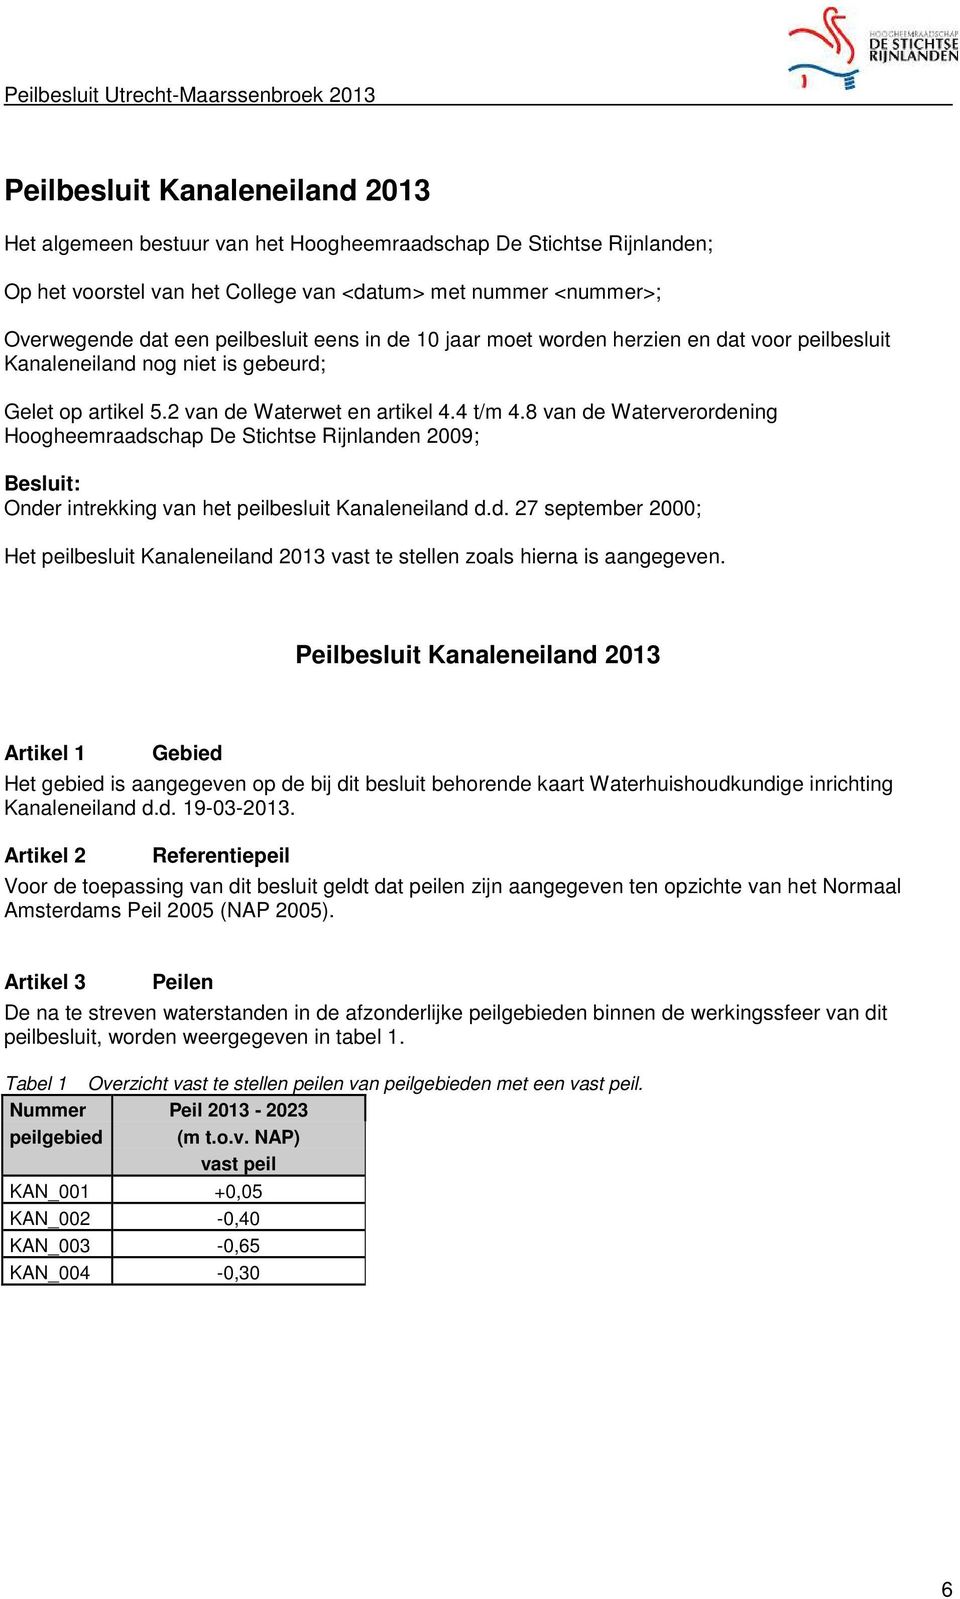 8 van de Waterverordening Hoogheemraadschap De Stichtse Rijnlanden 2009; Besluit: Onder intrekking van het peilbesluit Kanaleneiland d.d. 27 september 2000; Het peilbesluit Kanaleneiland 2013 vast te stellen zoals hierna is aangegeven.